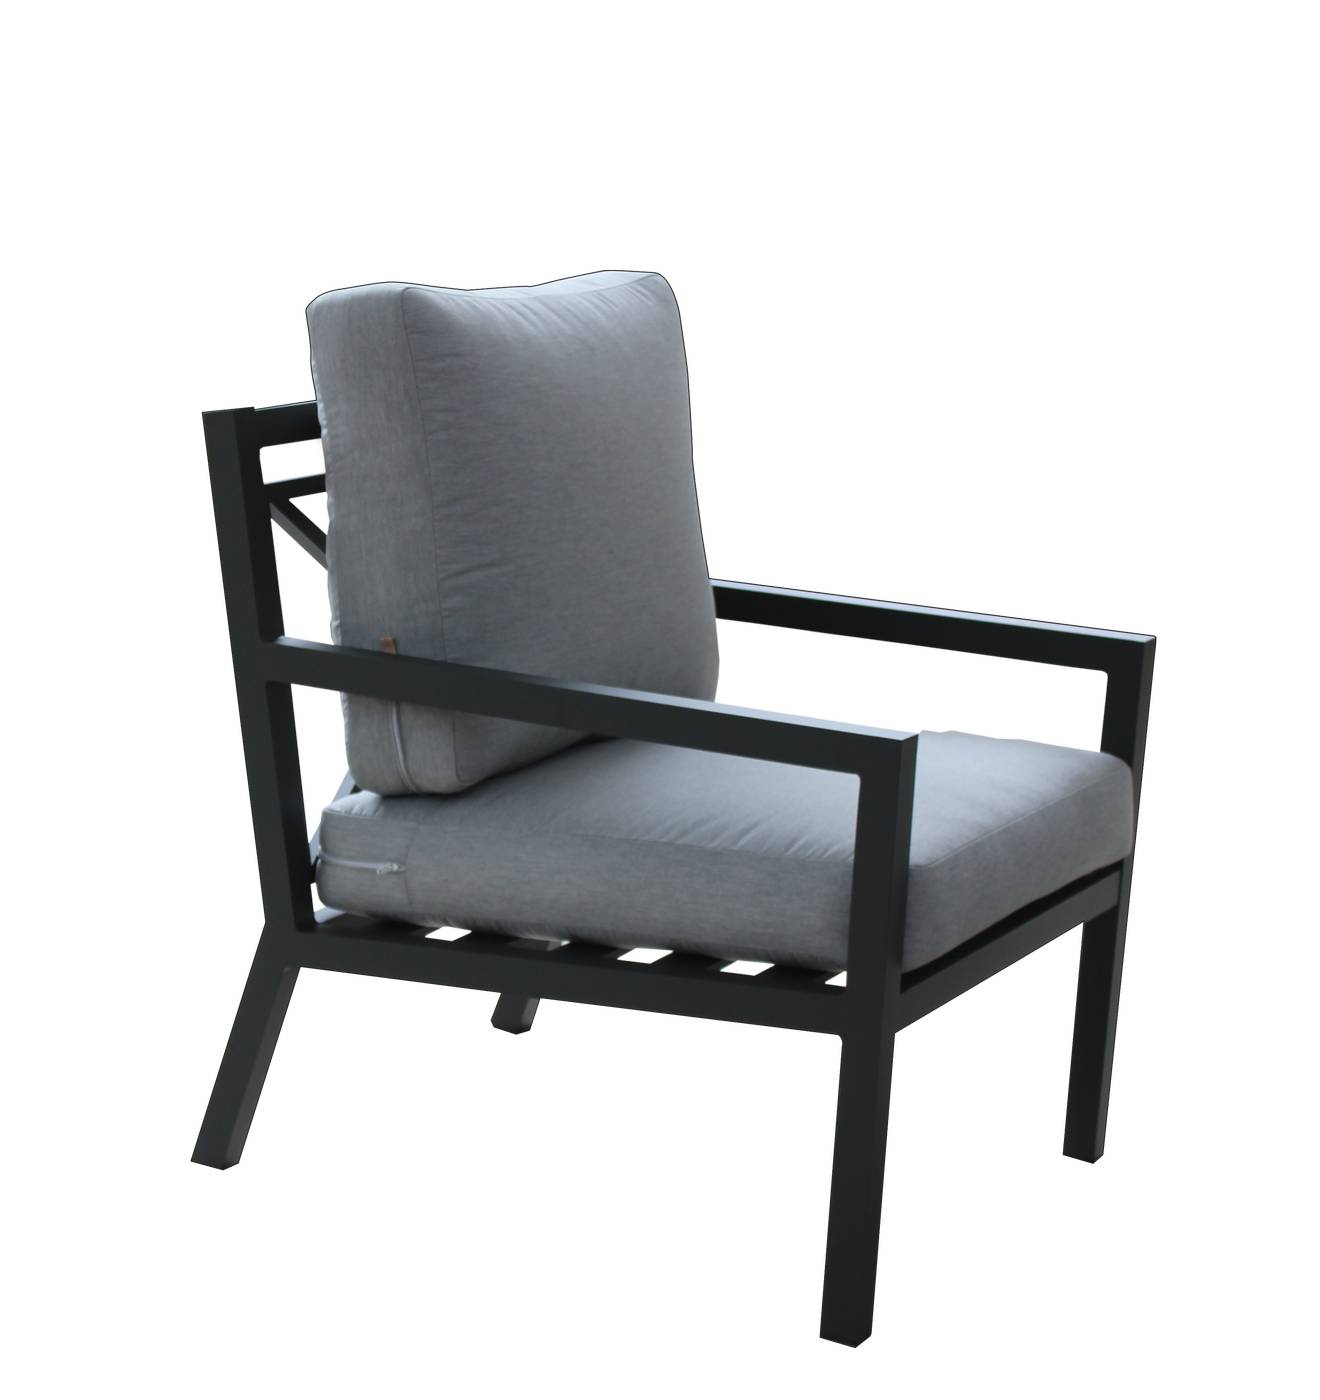 Sillón Aluminio Luxe Dounvil-1 - Cómodo sillón relax de aluminio de alta gama,  con cojines gran confort  fácilmente desenfundables. Estructura aluminio color blanco, antracita, champagne, plata o marrón.